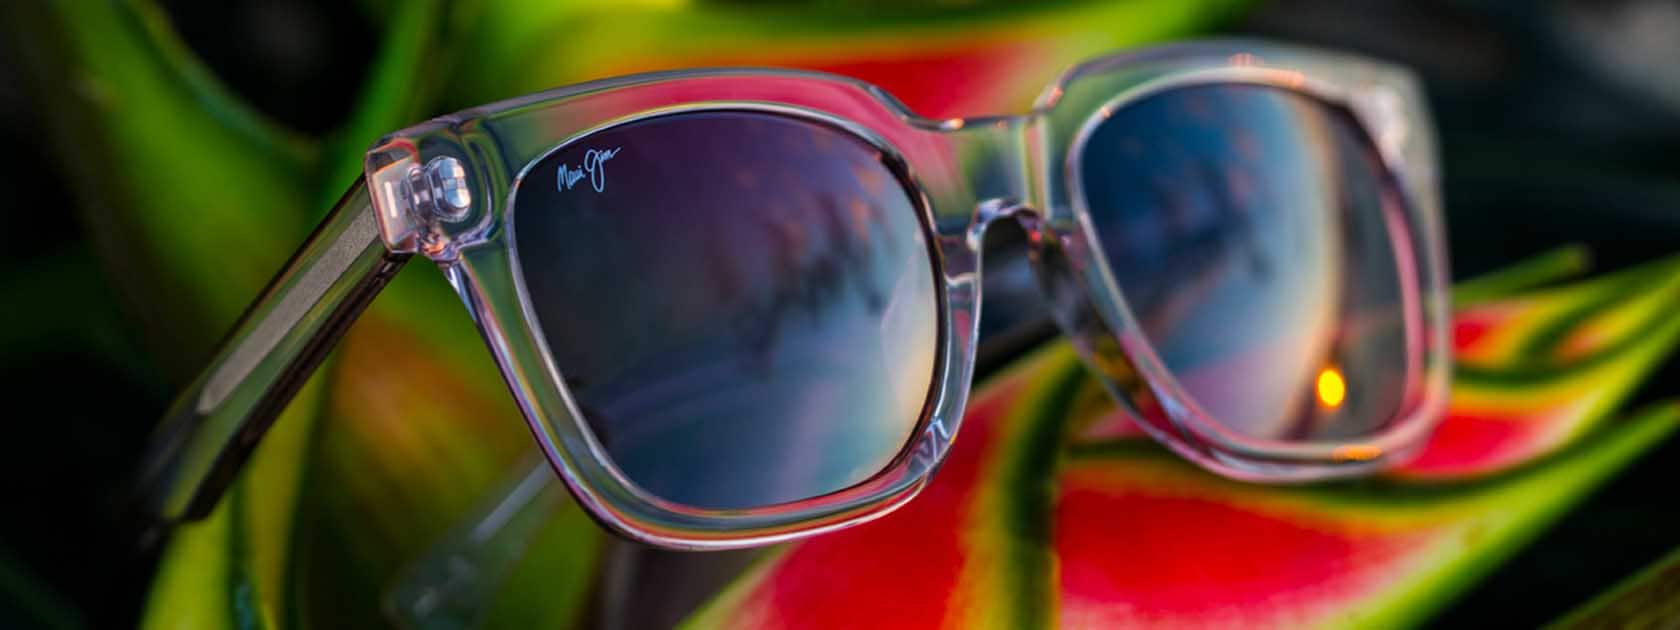 montura de gafas de sol transparente con lentes rosas expuesta sobre hojas tropicales rojas y verdes